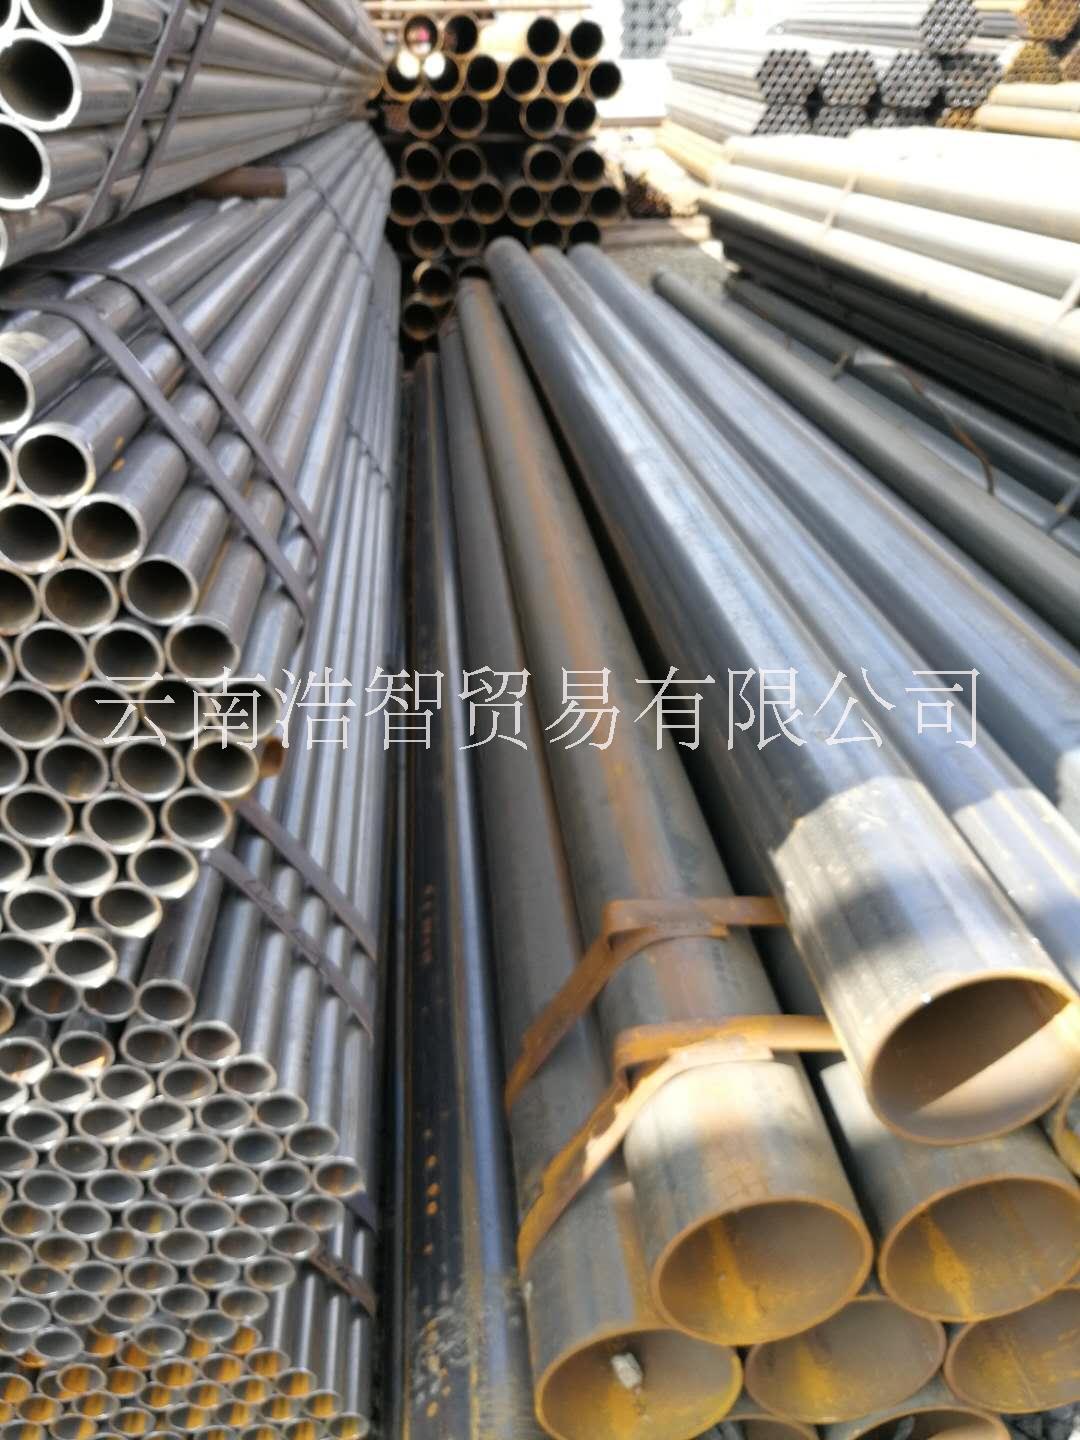 云南焊管价格 焊管生产厂家 昆明焊管哪家便宜图片